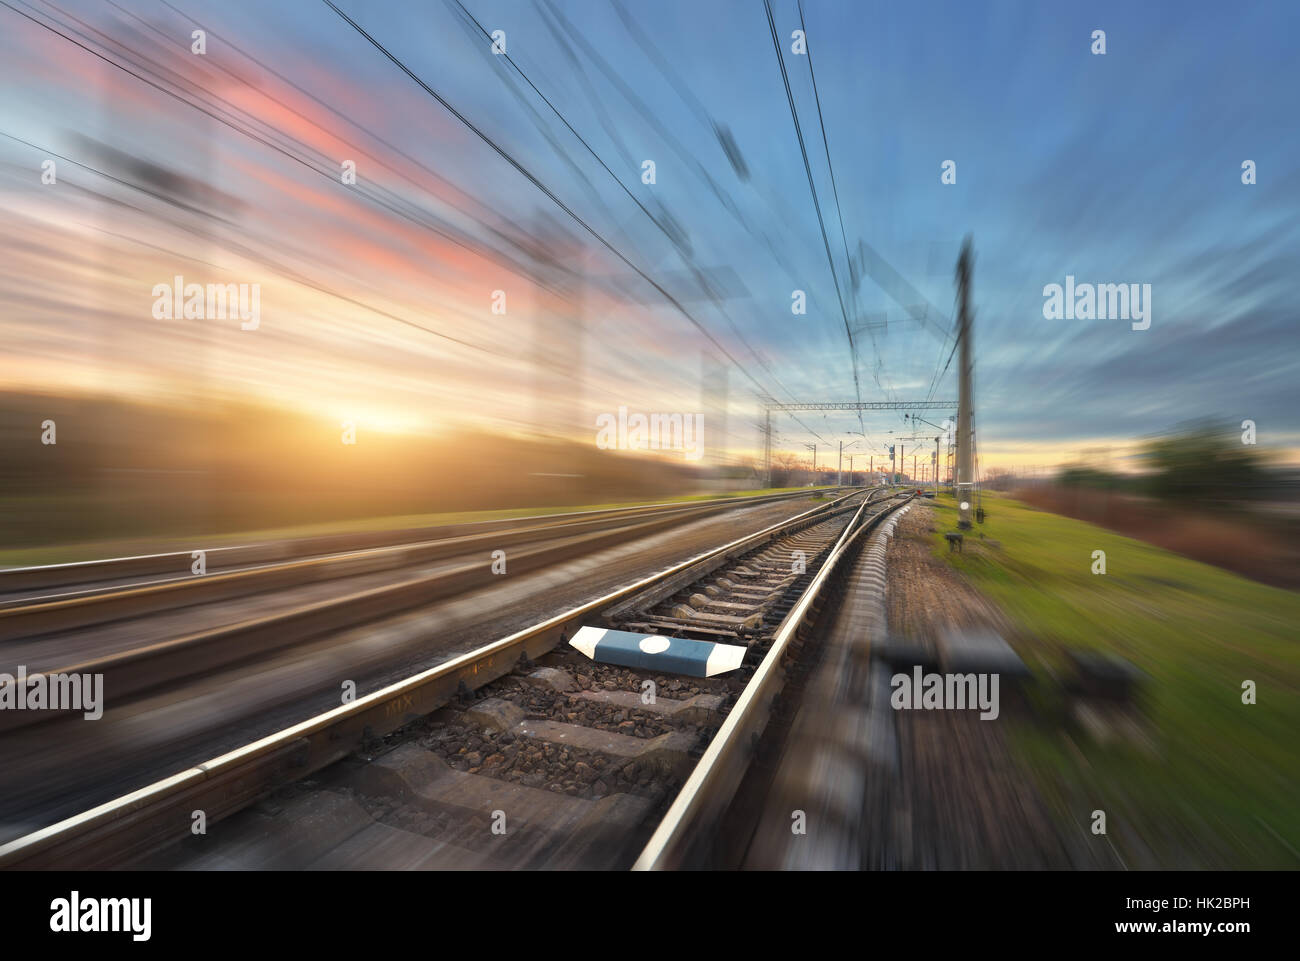 Railroad in motion au coucher du soleil. Gare avec effet de flou coloré contre ciel ensoleillé, concept industriel Contexte Banque D'Images